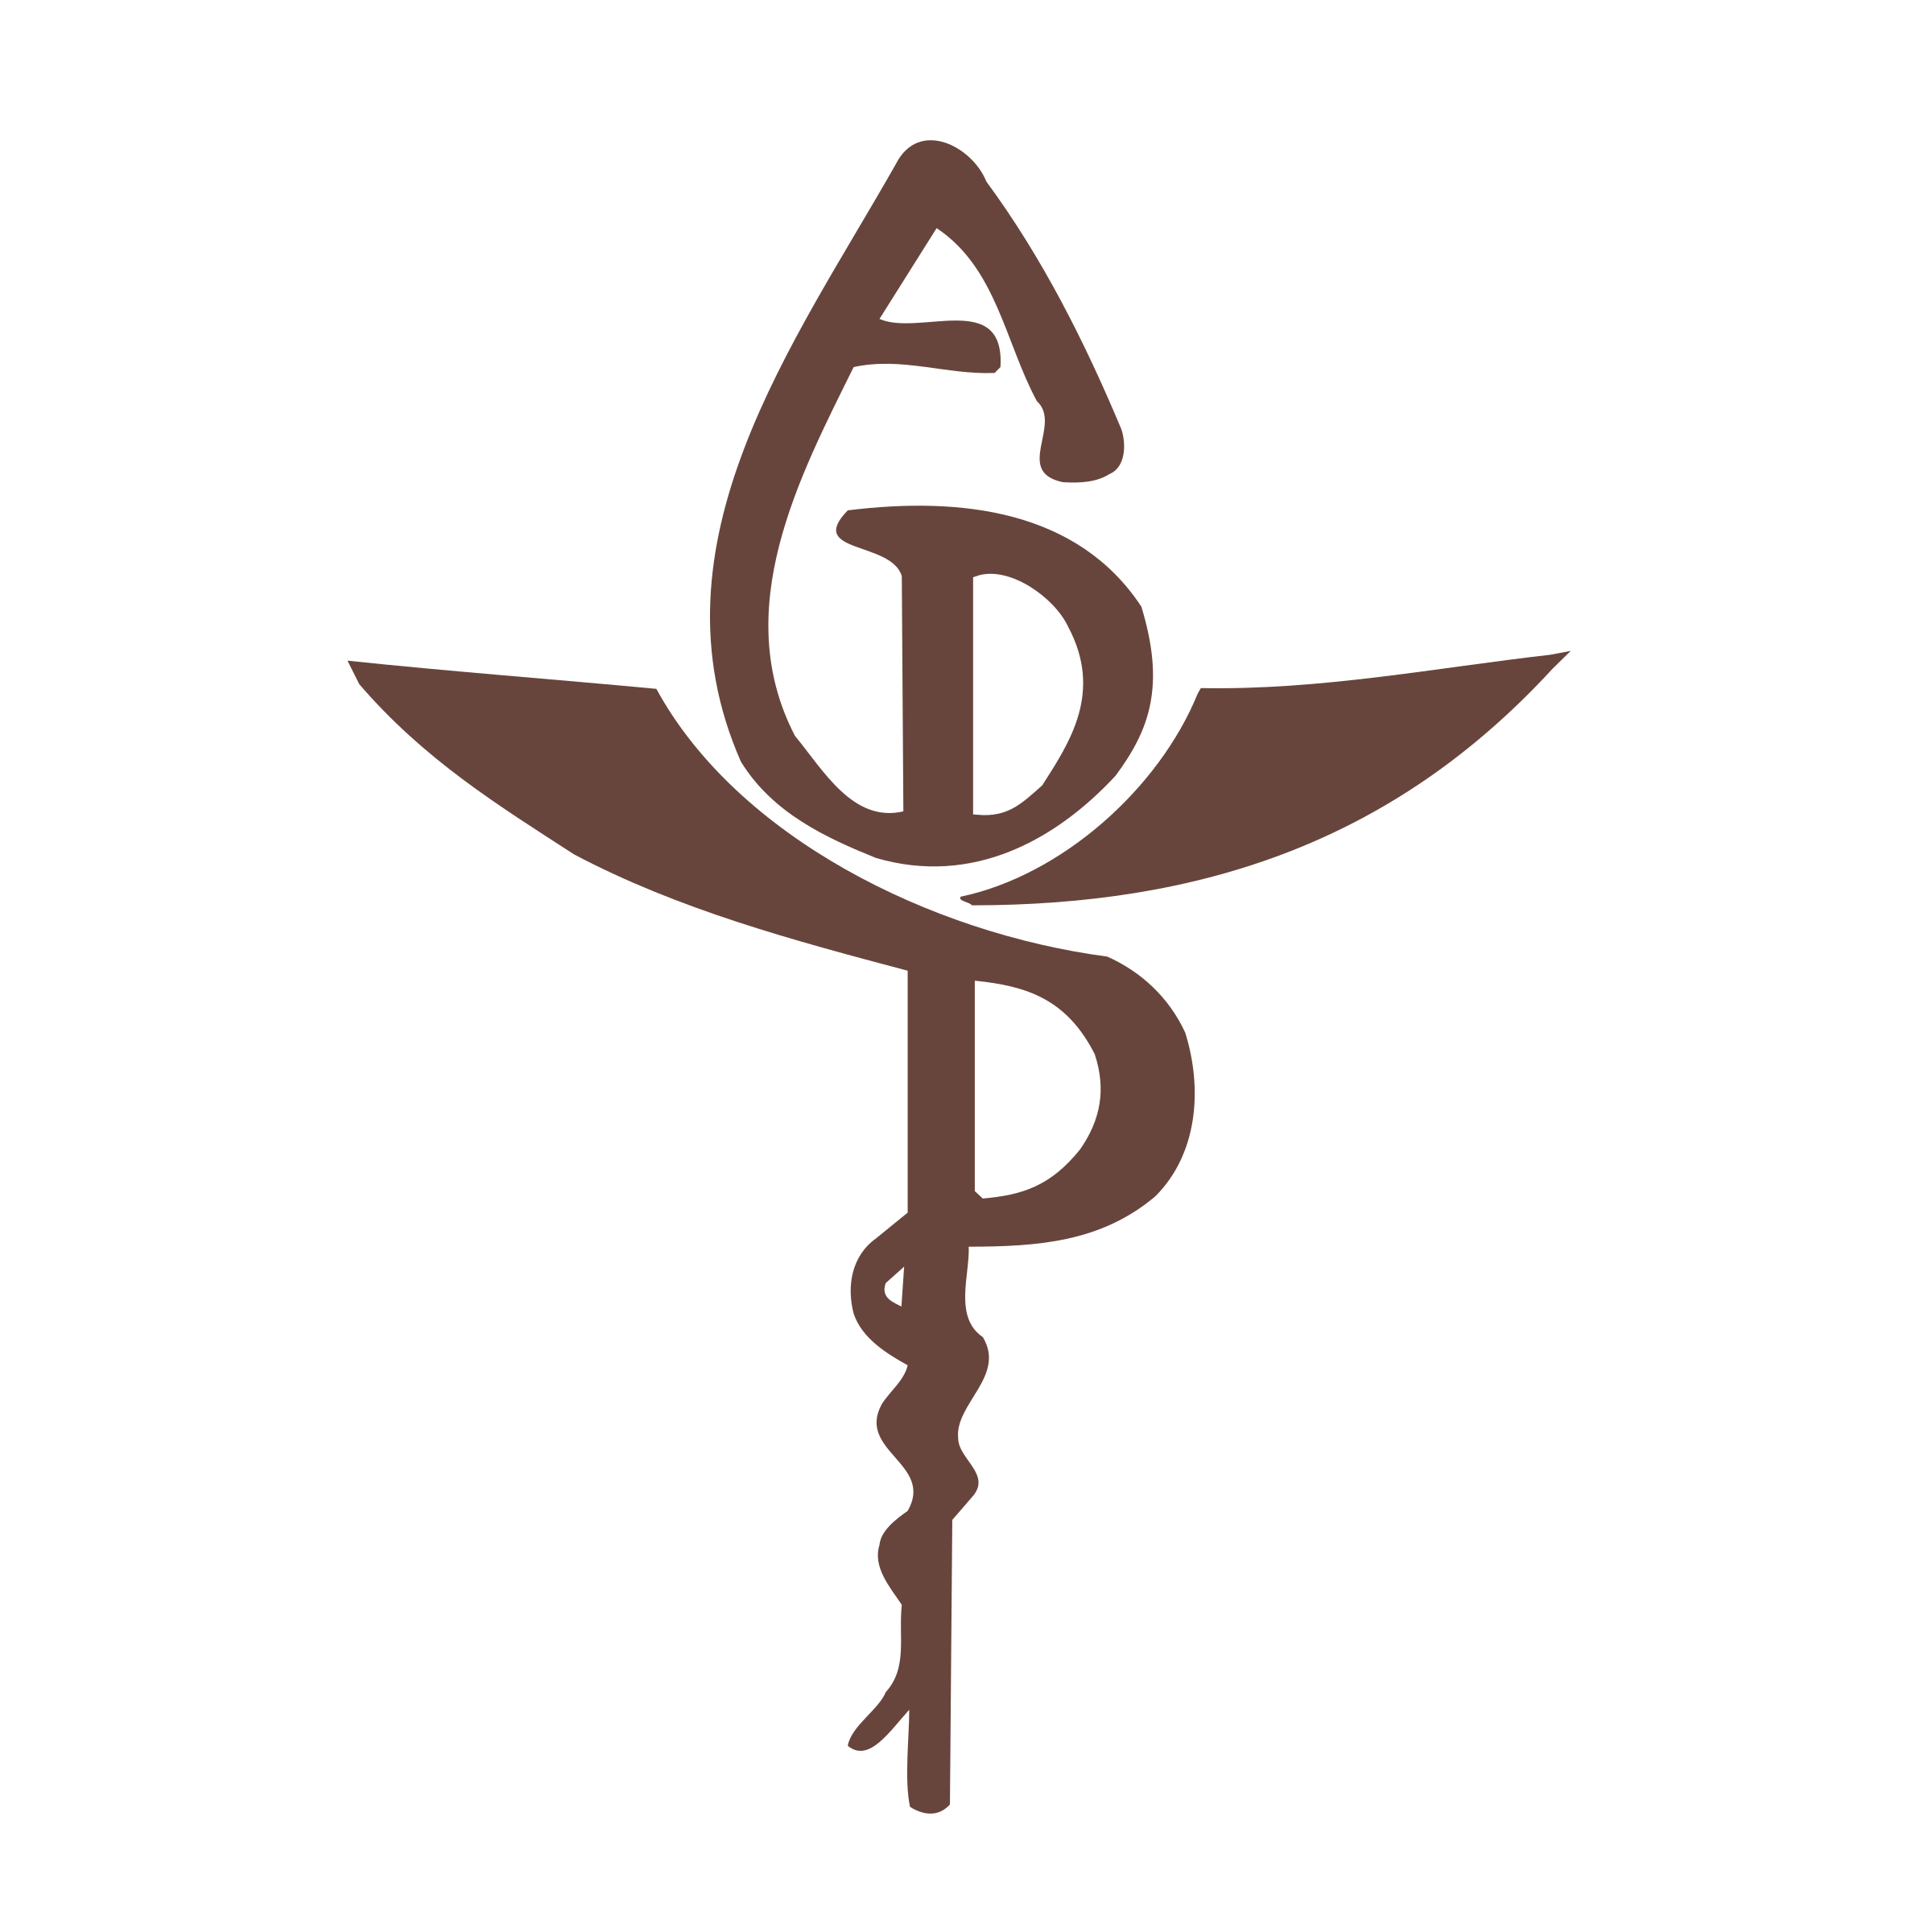 ADP 02 Logo PNG Transparent & SVG Vector.